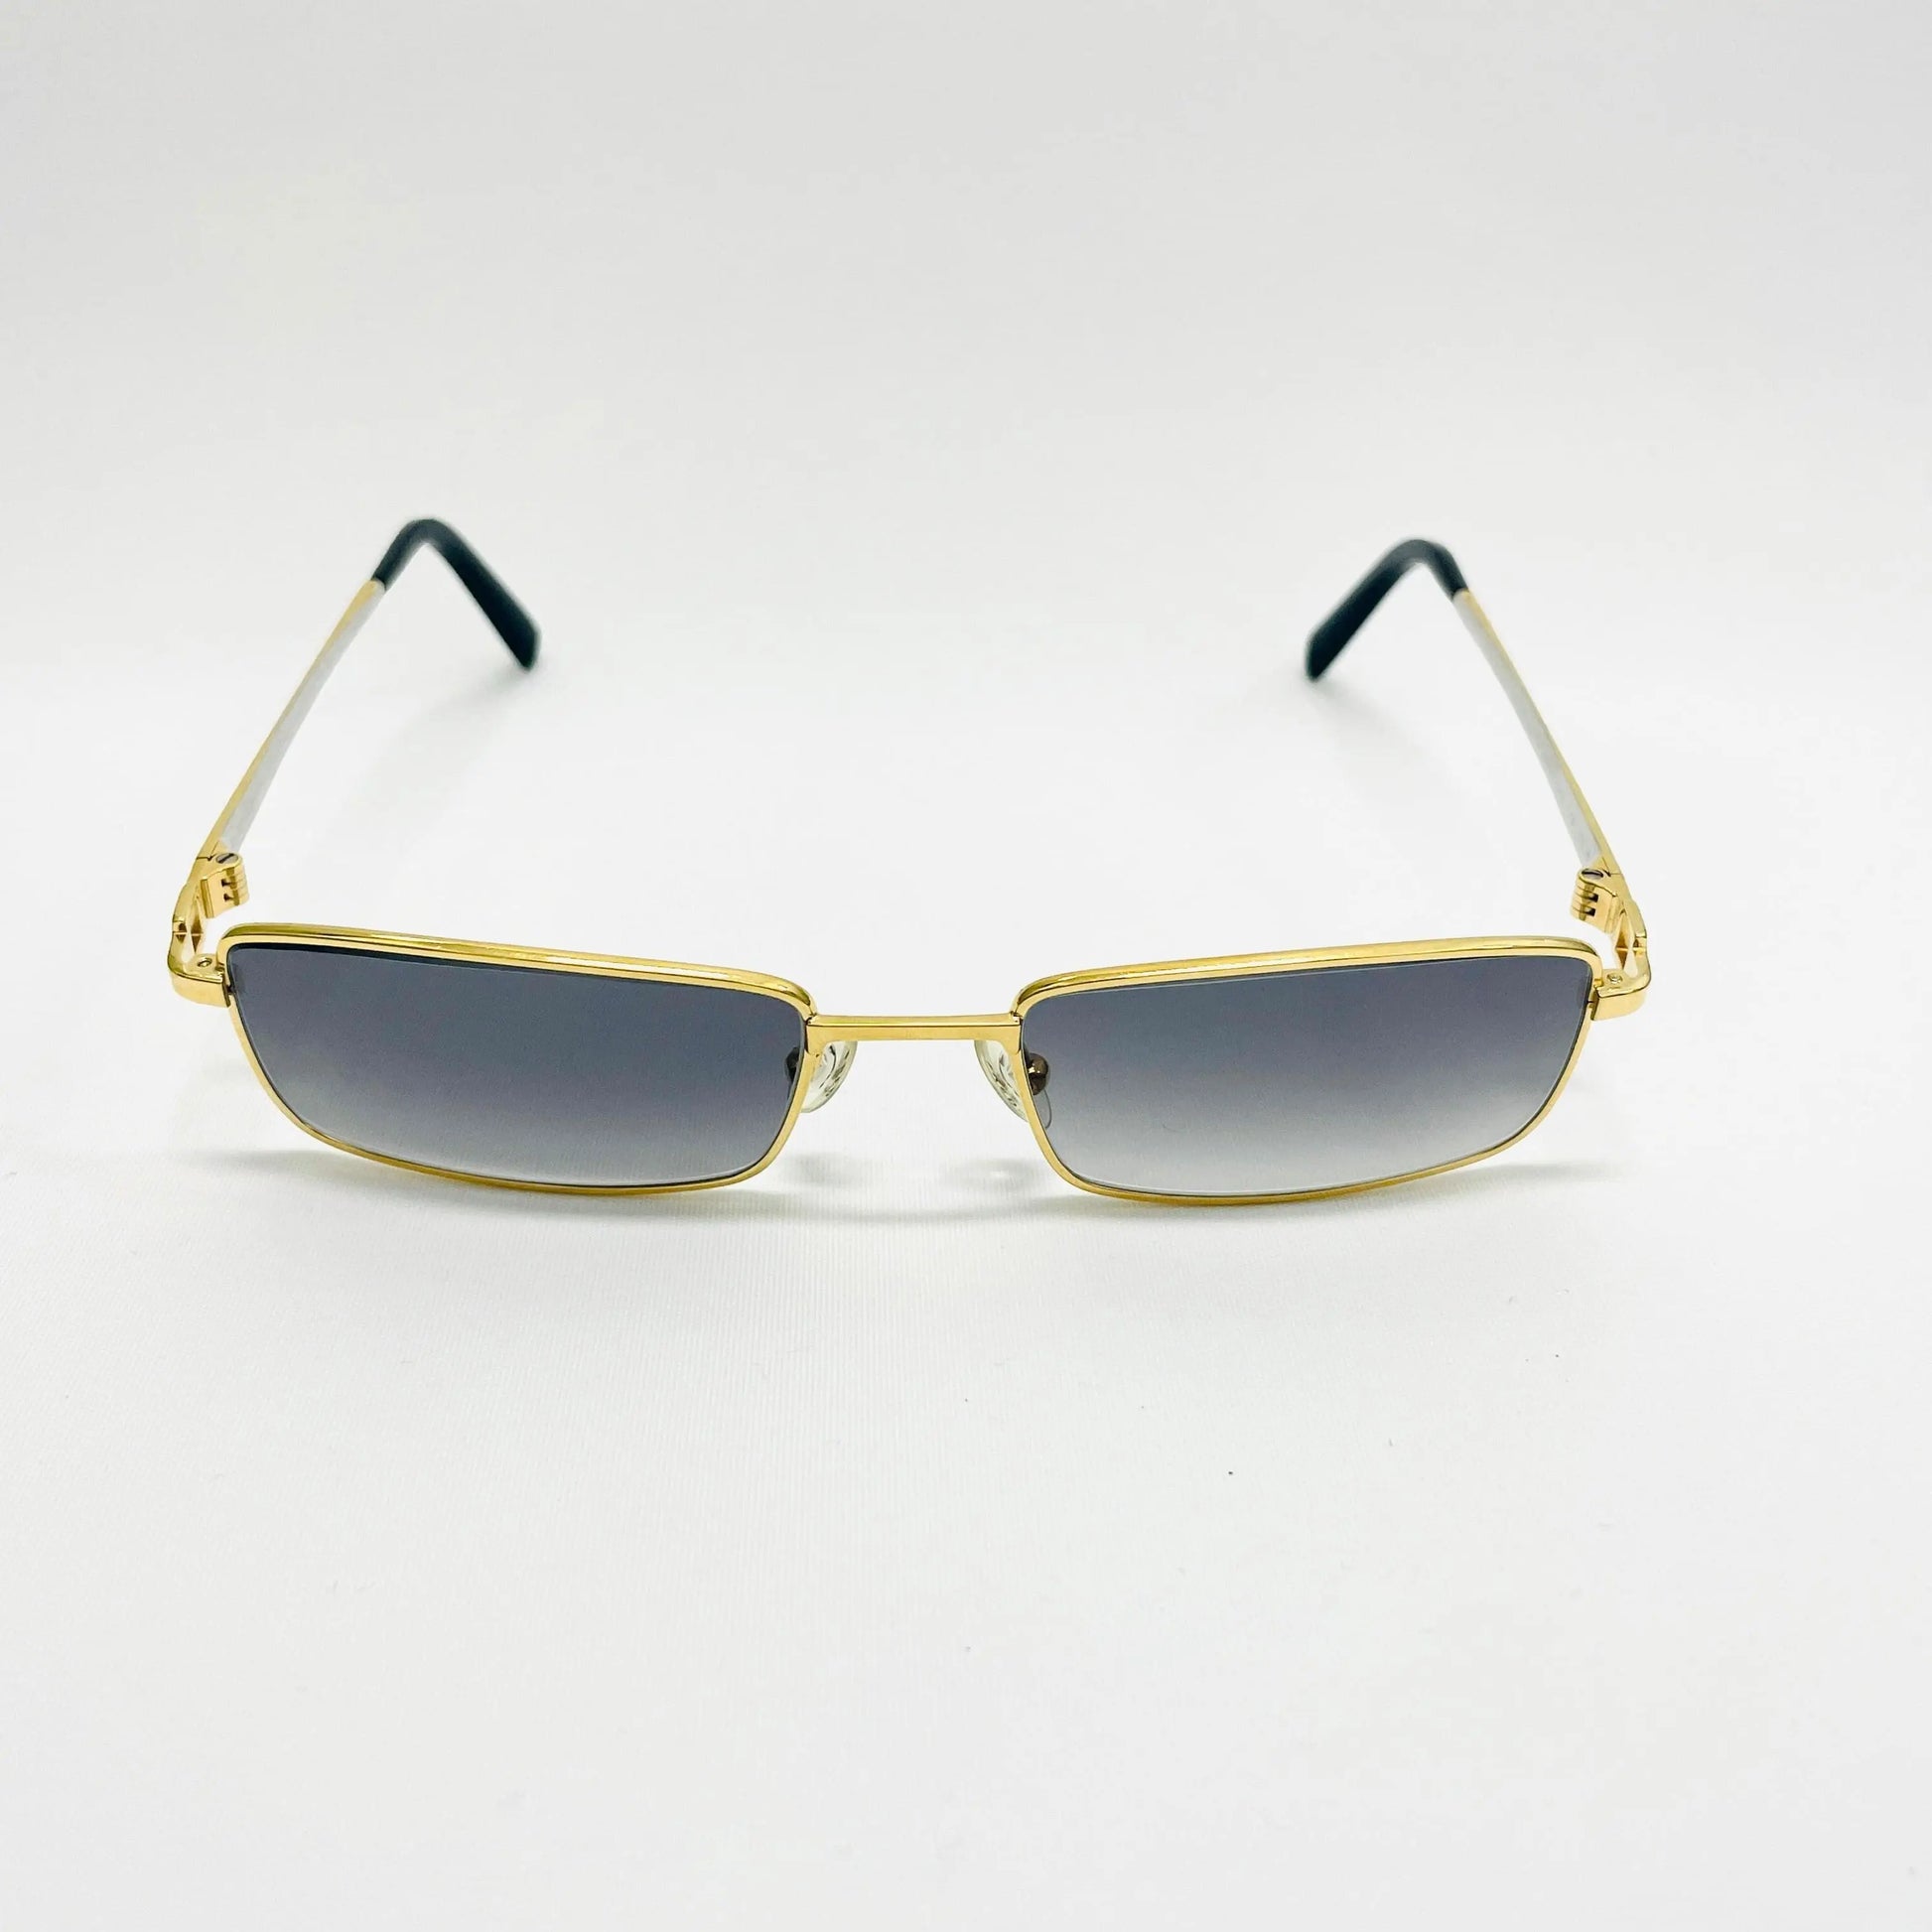 Fred-Paris-Sonnenbrille-Sunglasses-Model-Saint-Vincent-Gold  Alt-Text bearbeiten